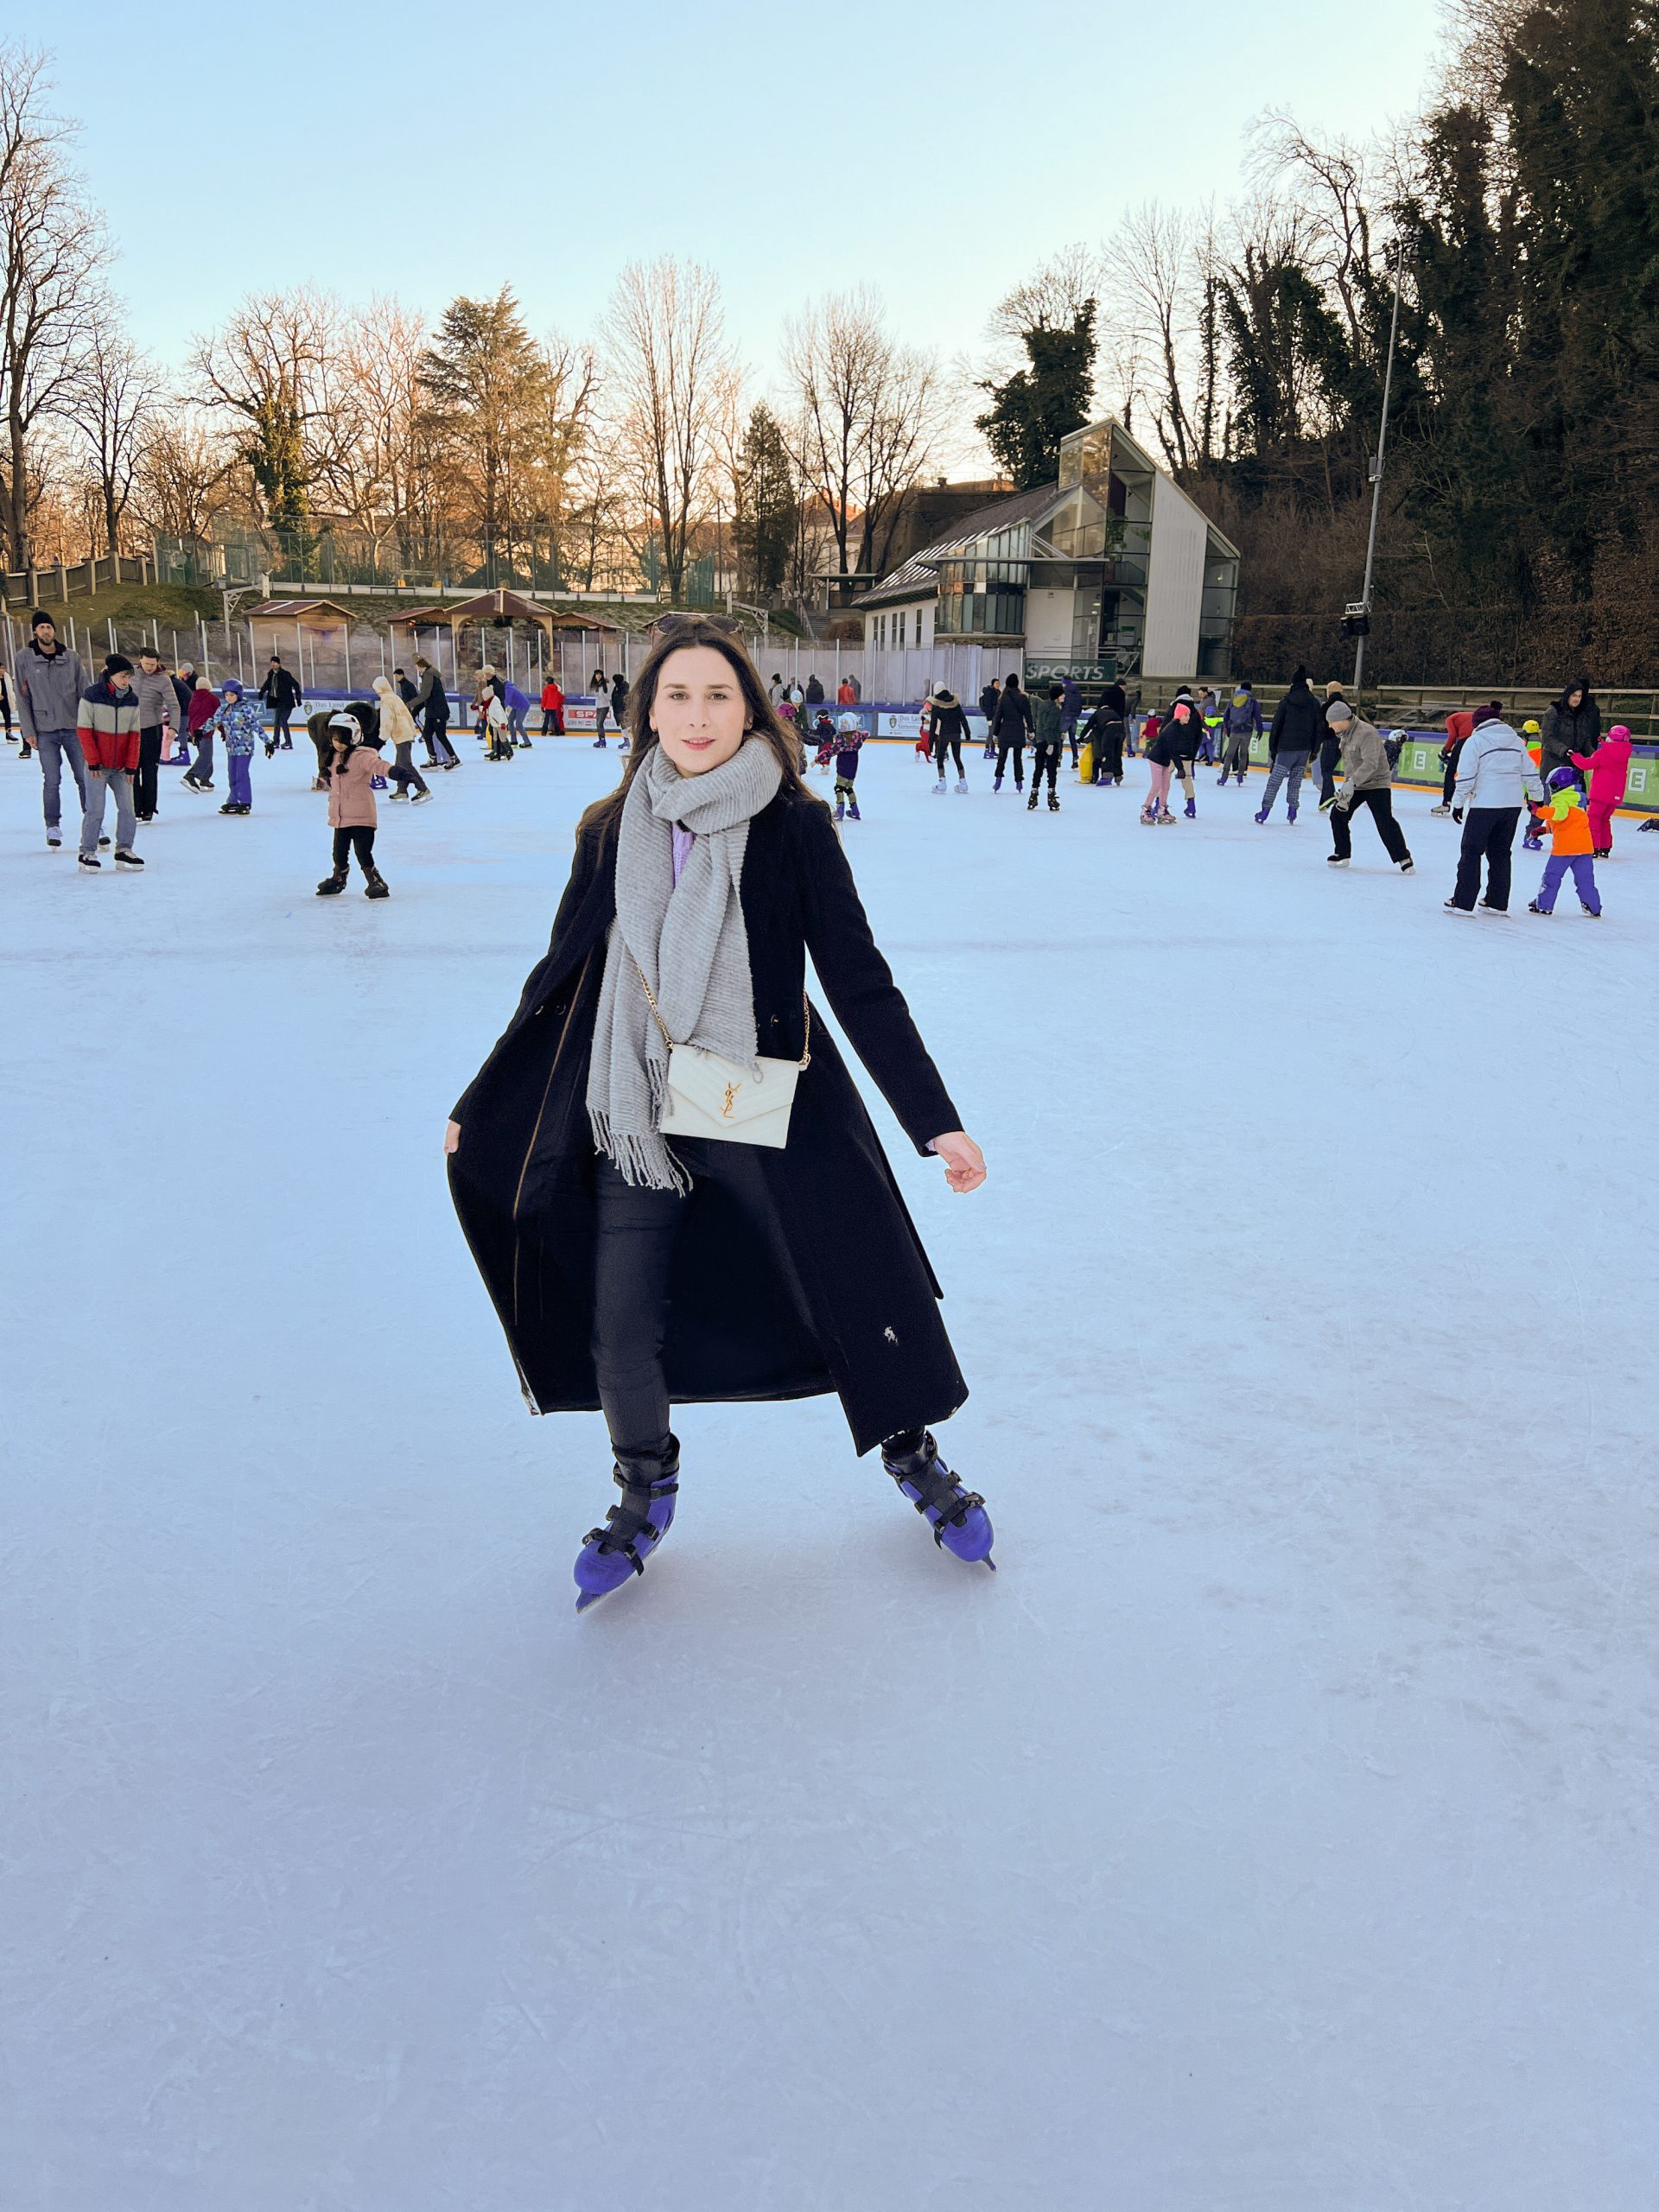 junge Frau mit schwarzem Mantel, grauem Schal und beiger Yves Saint Laurent Tasche und Eislaufschuhen am Eislaufplatz der Grazer Winterwelt, im Hintergrund andere Eisläuferinnen und Eisläufer